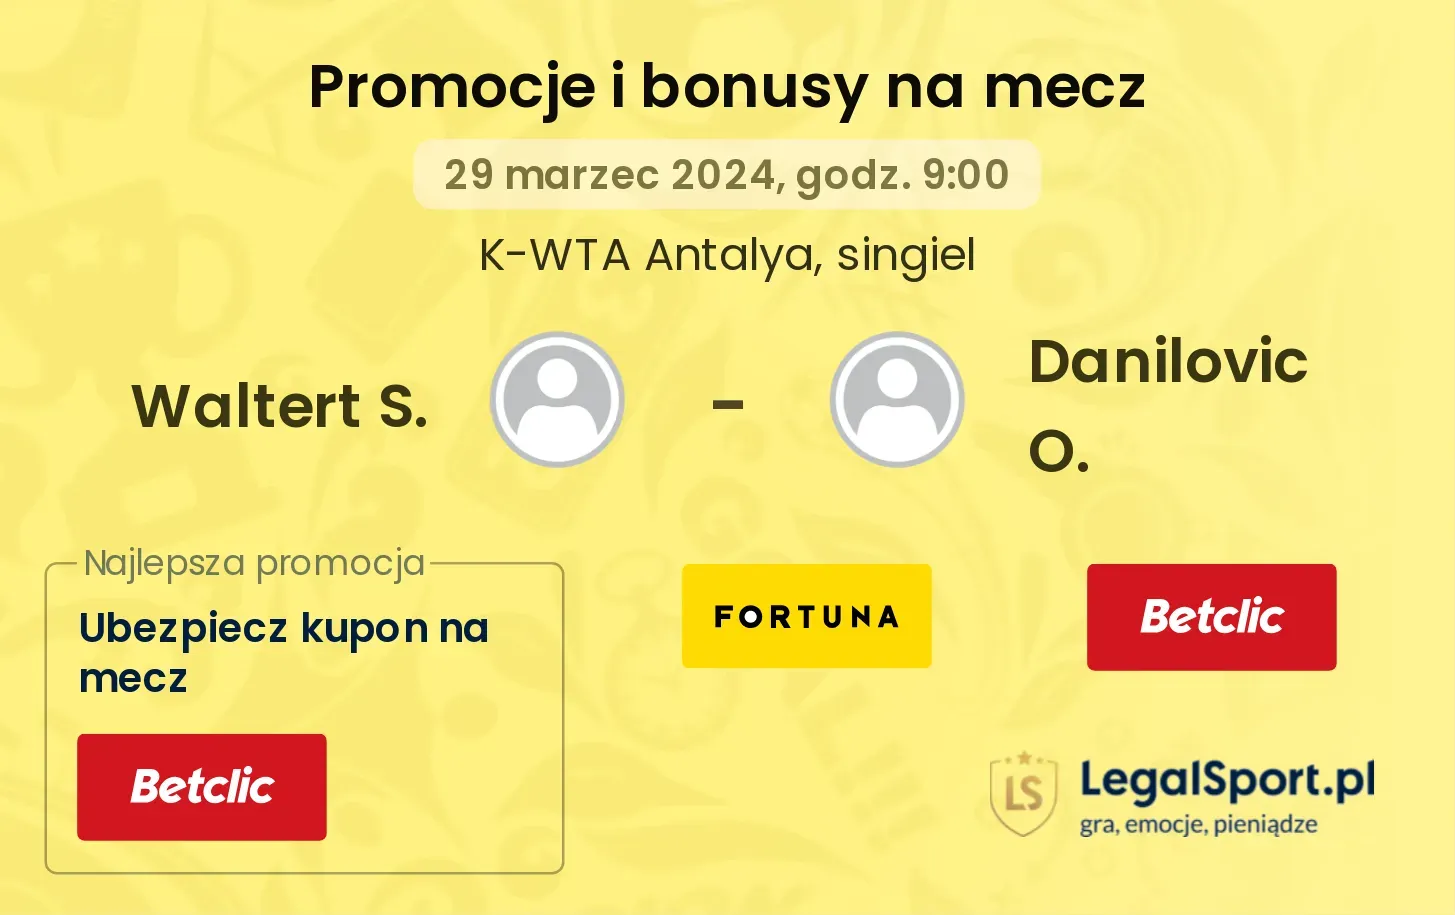 Waltert S. - Danilovic O. promocje bonusy na mecz